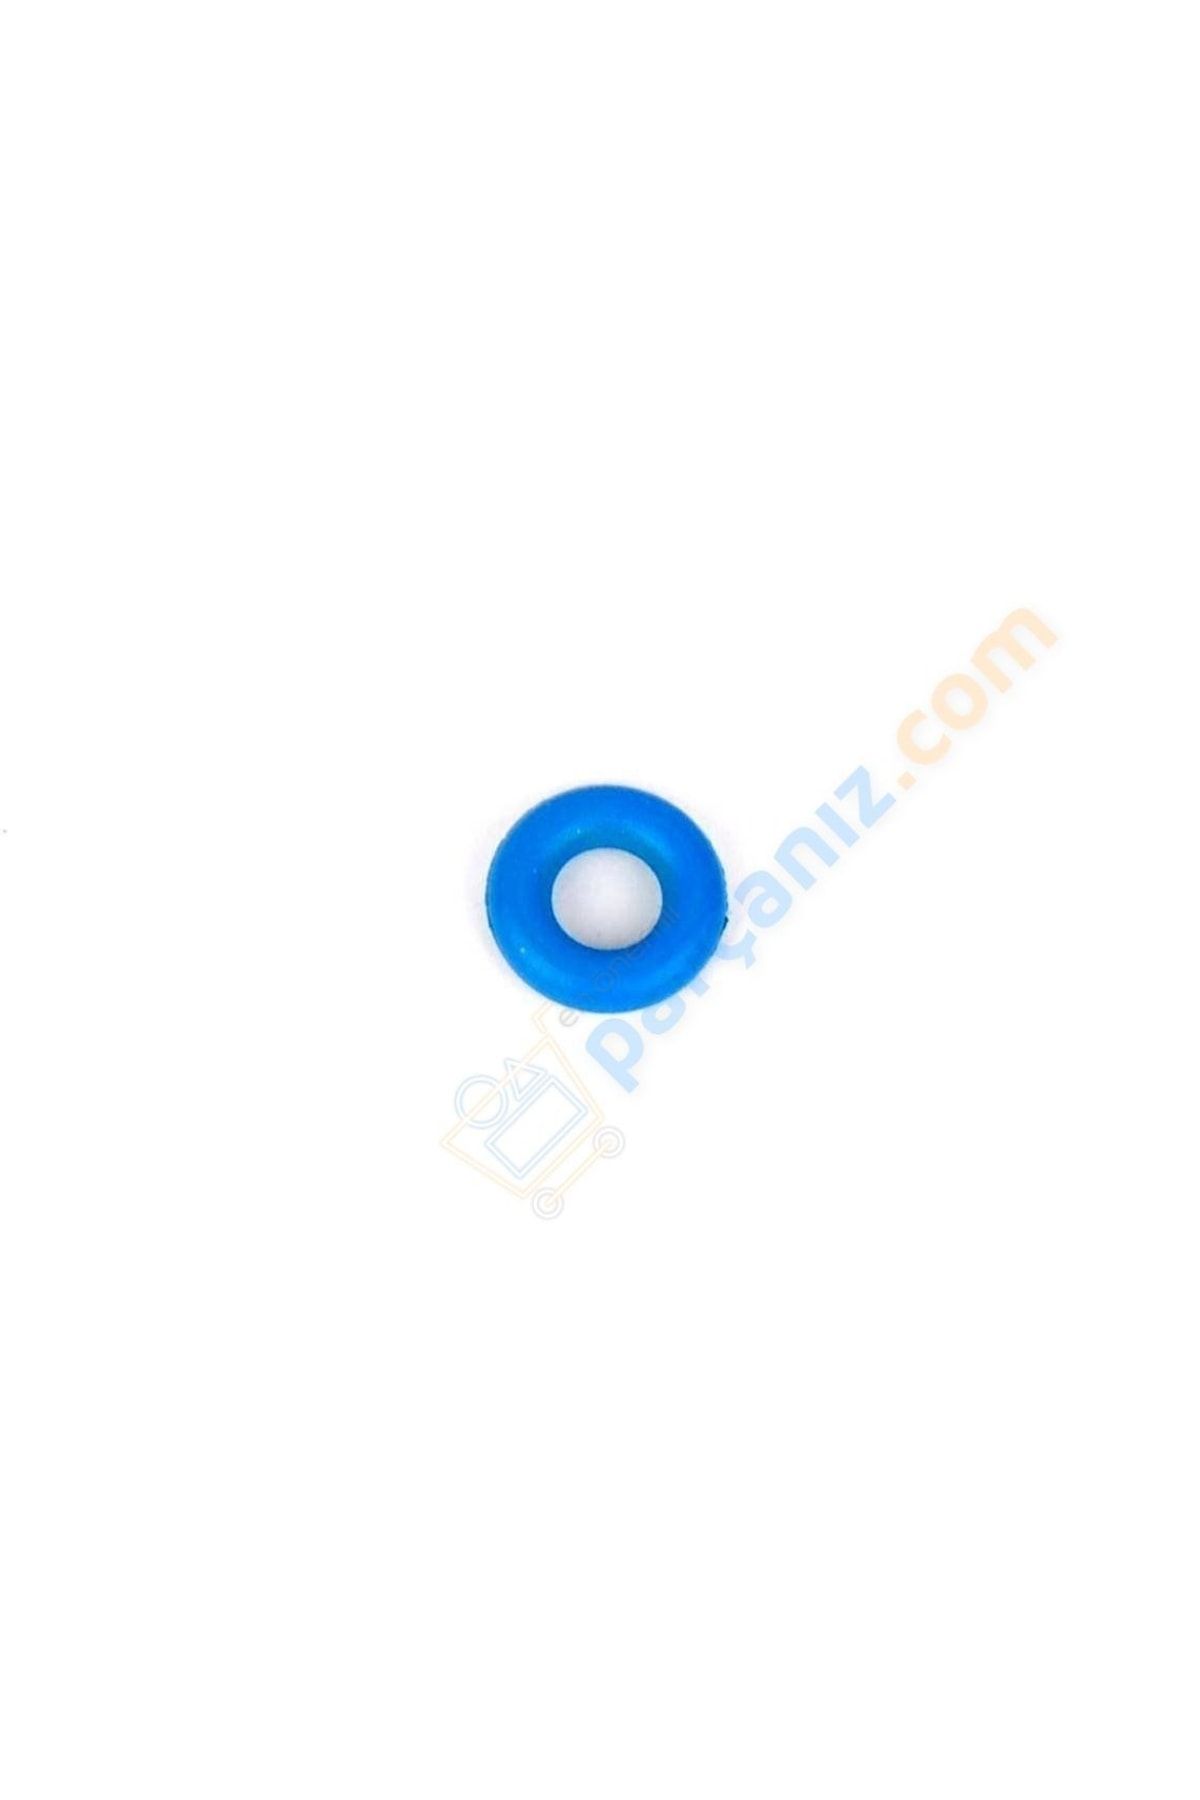 FOMOCO Enjektör Geri Dönüş Oringi (mavi Viton) 2.0 Ecoblue V362 V363